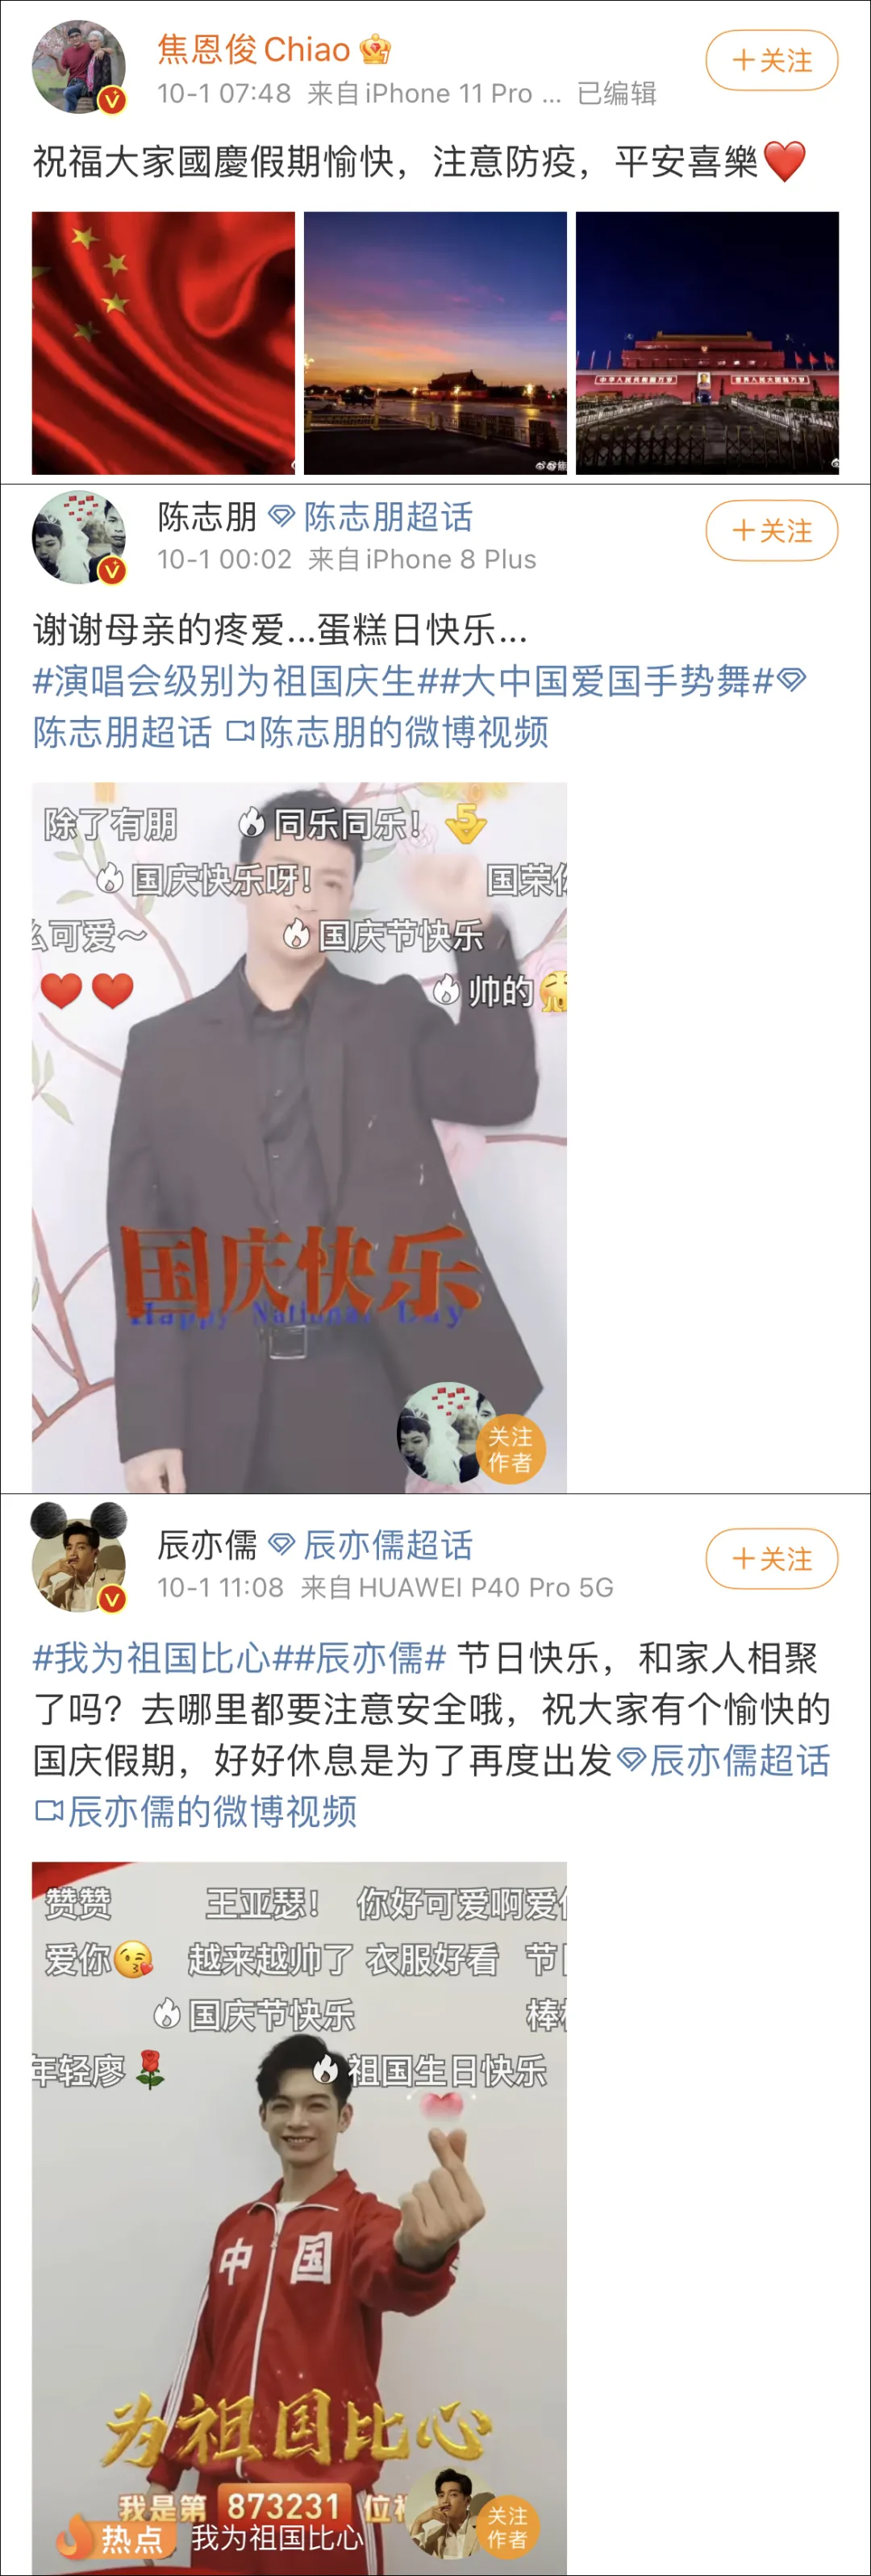 “我是中国人，我爱我的祖国” 总台晚会上台湾艺人的深情表白